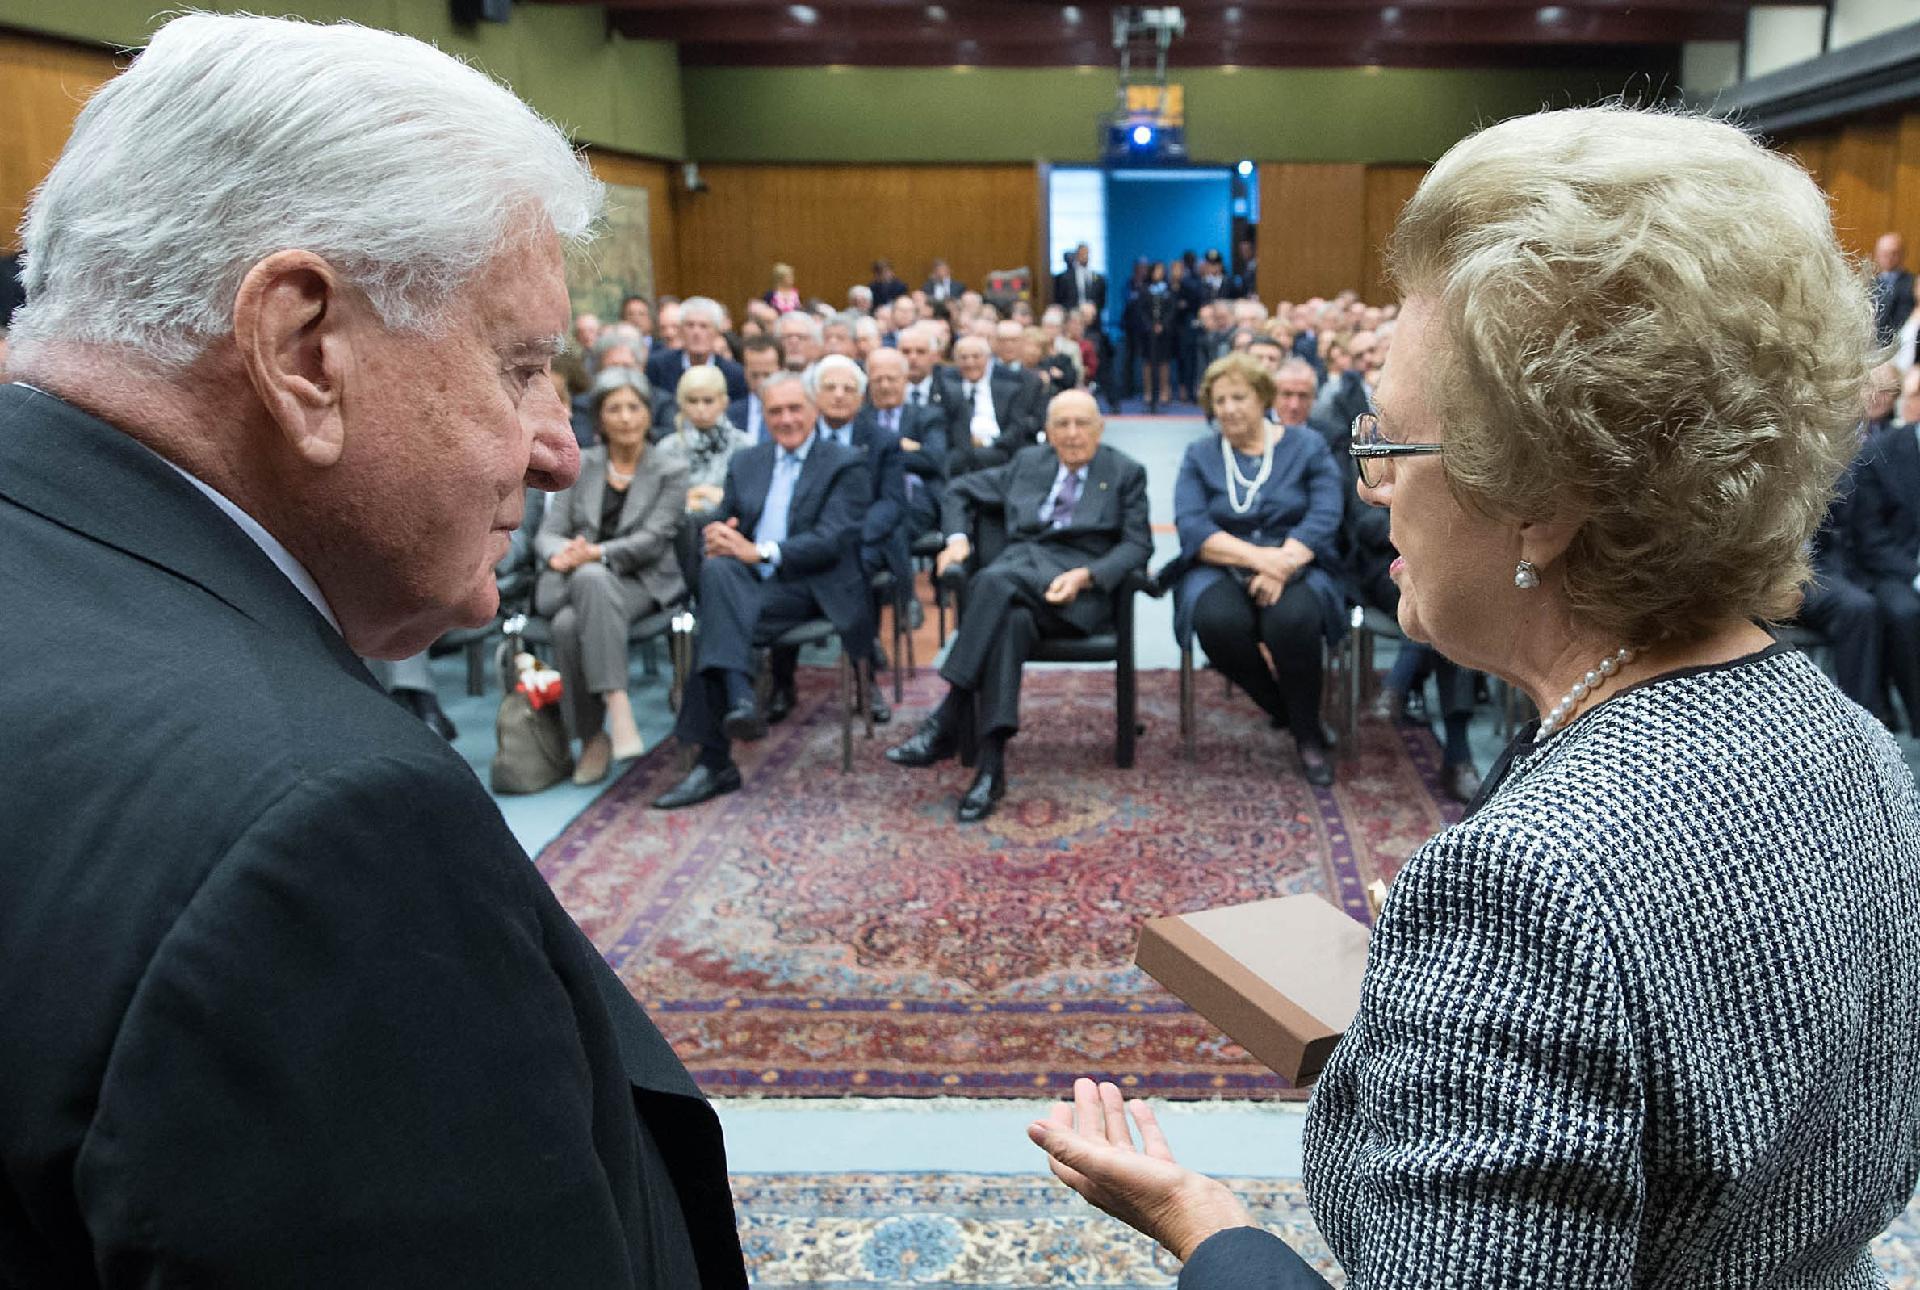 Il Presidente Giorgio Napolitano nel corso dell'intervento presso la sede della RAI in occasione del 90° compleanno di Sergio Zavoli, a destra nella foto Anna Maria Tarantola Presidente della RAI